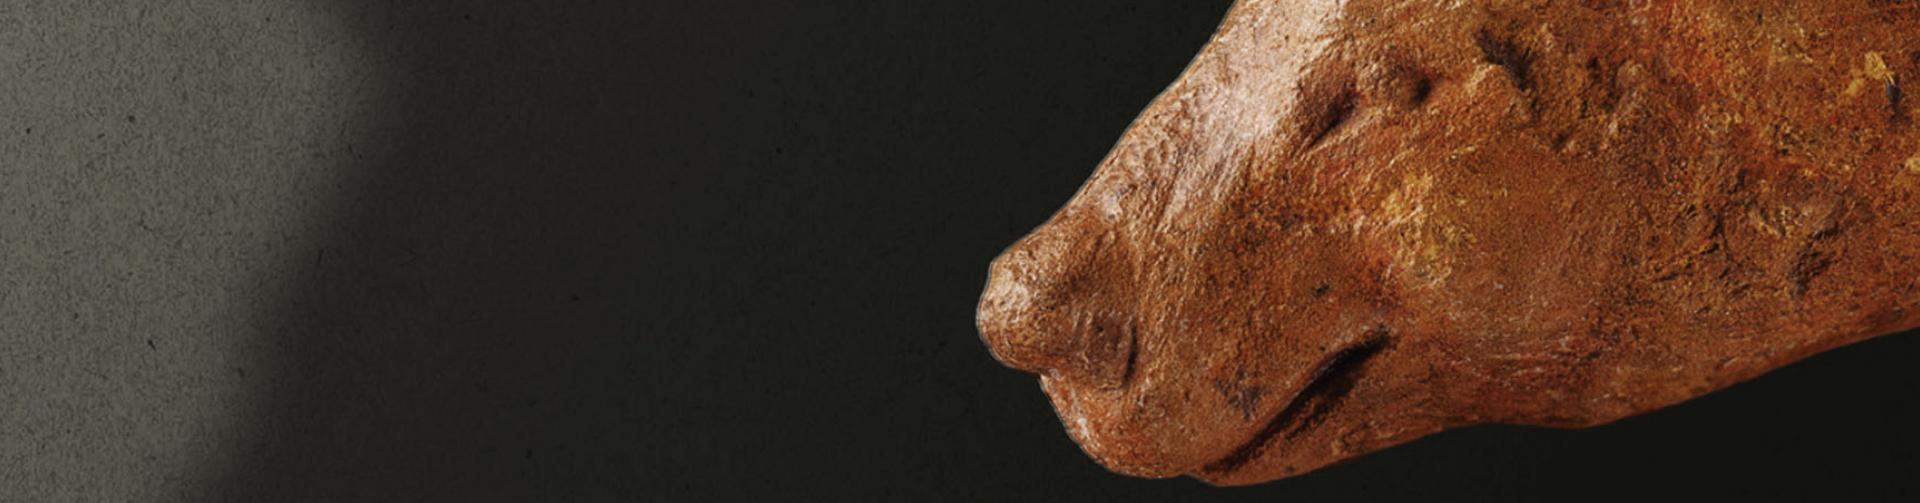 exposition L'ours dans l'art préhistorique